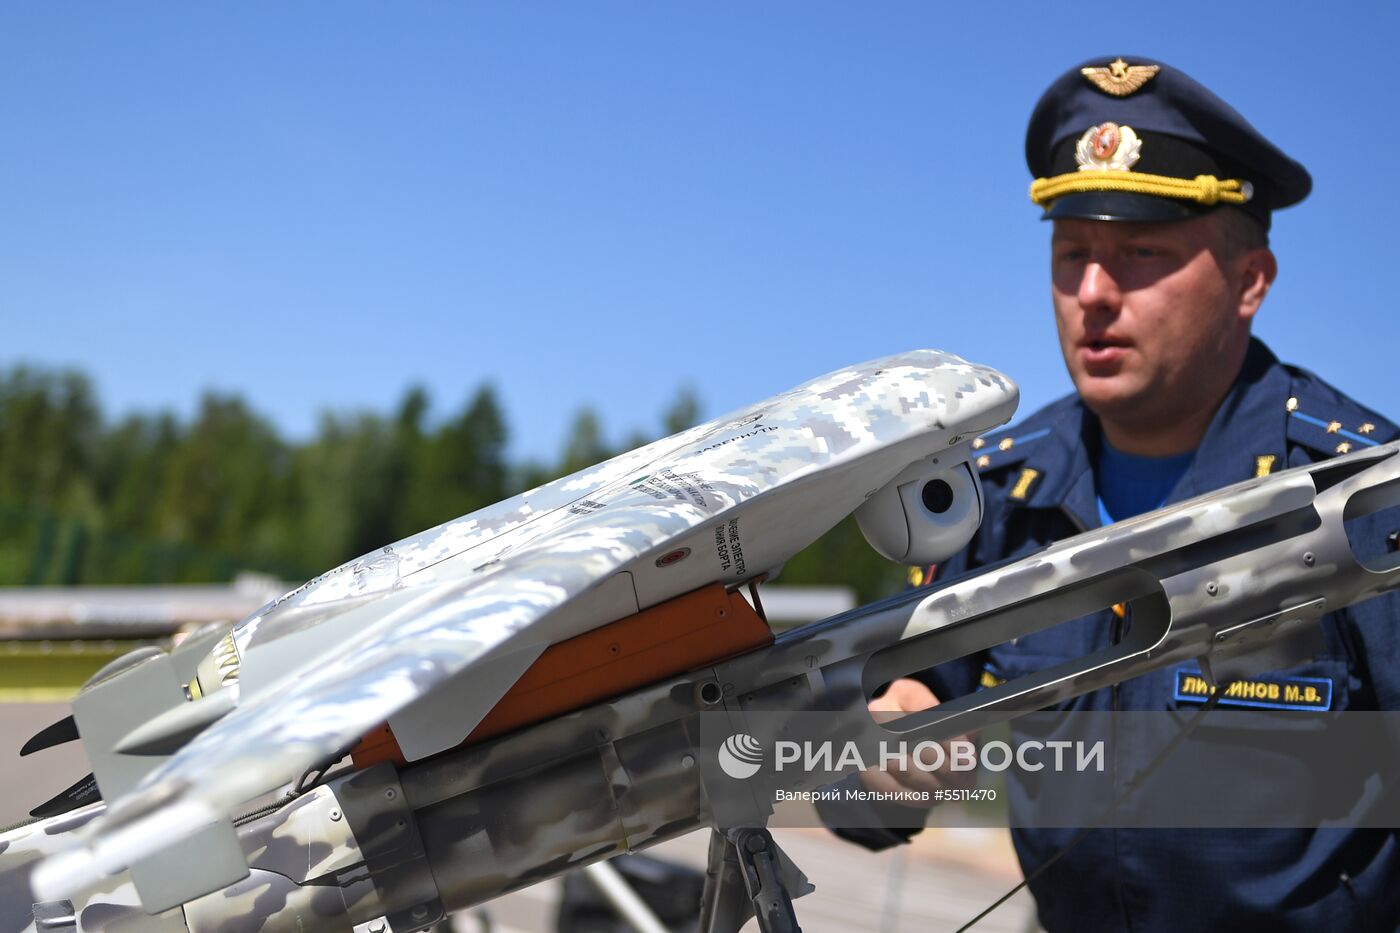 Военно-научная конференция "Роботизация Вооруженных сил  РФ"